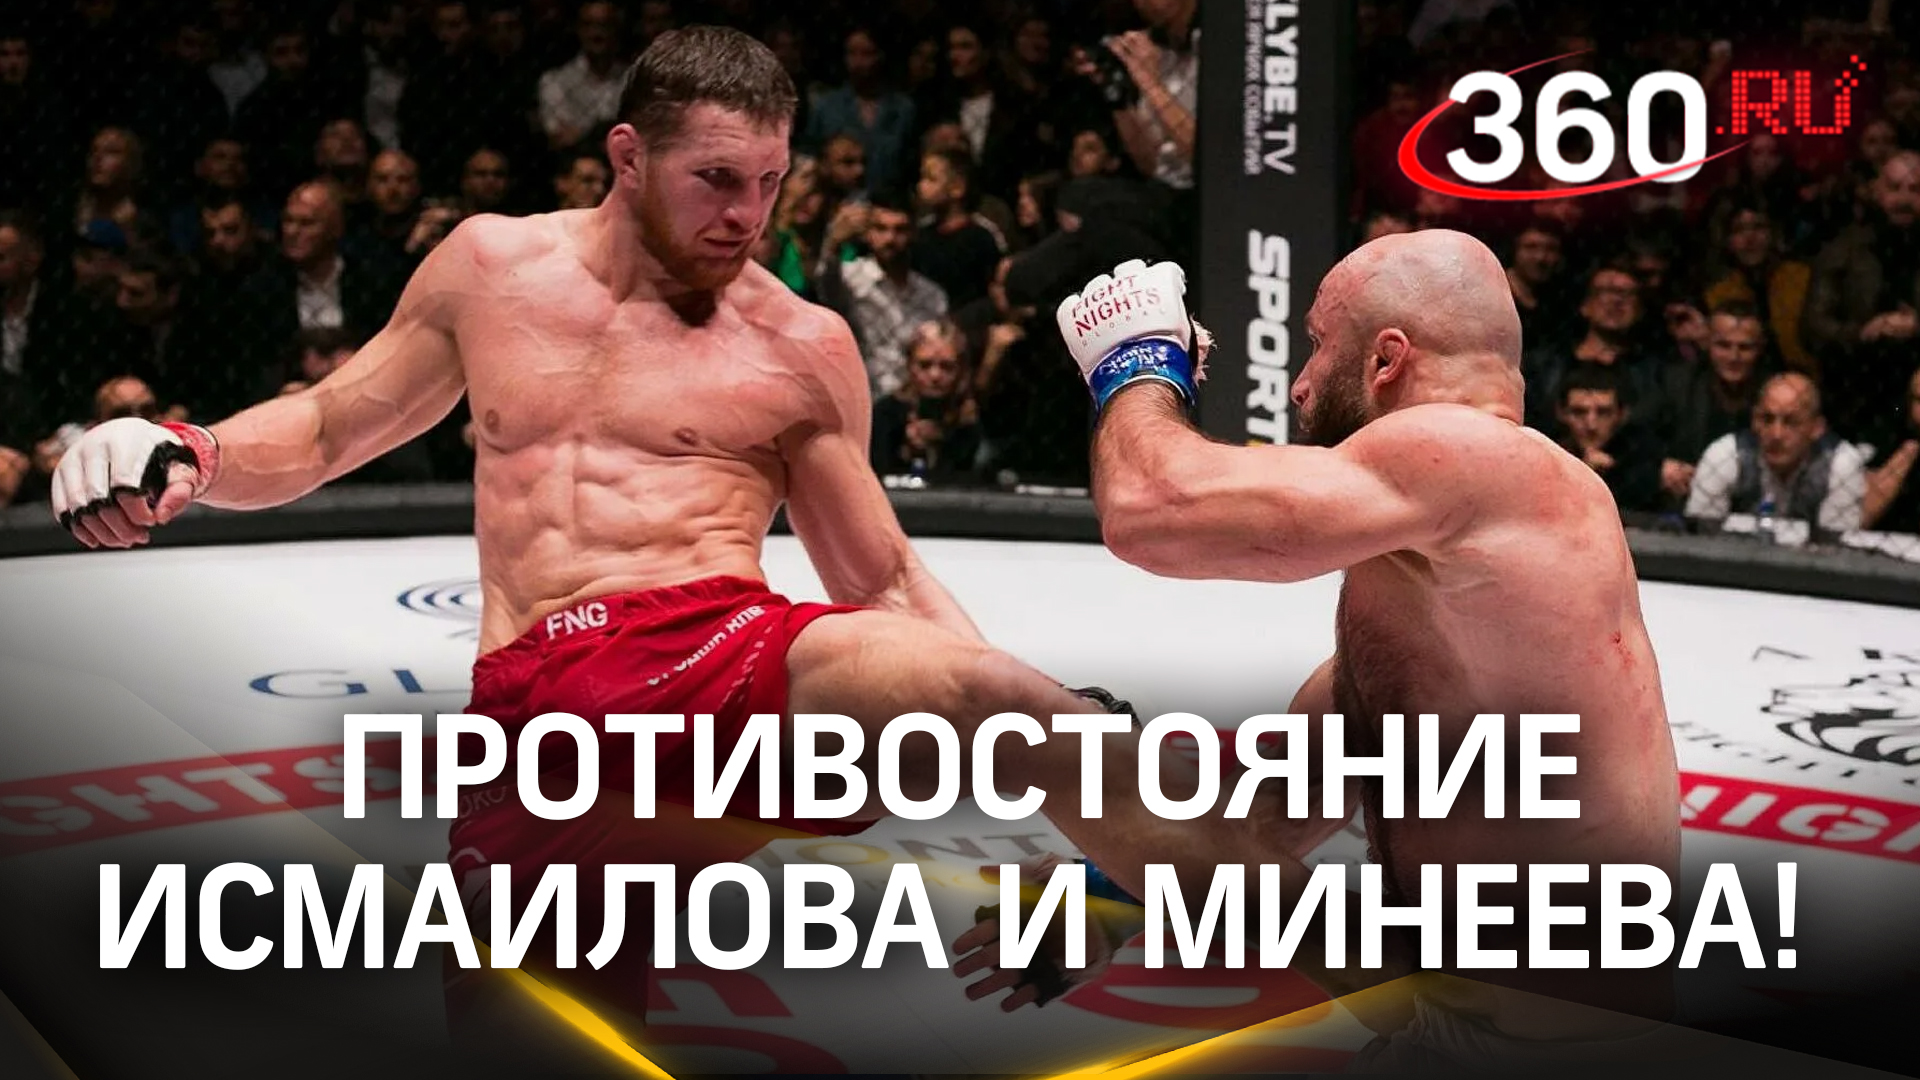 20 июля пройдет бой года: поединок Исмаилова и Минеева, кто же победит?